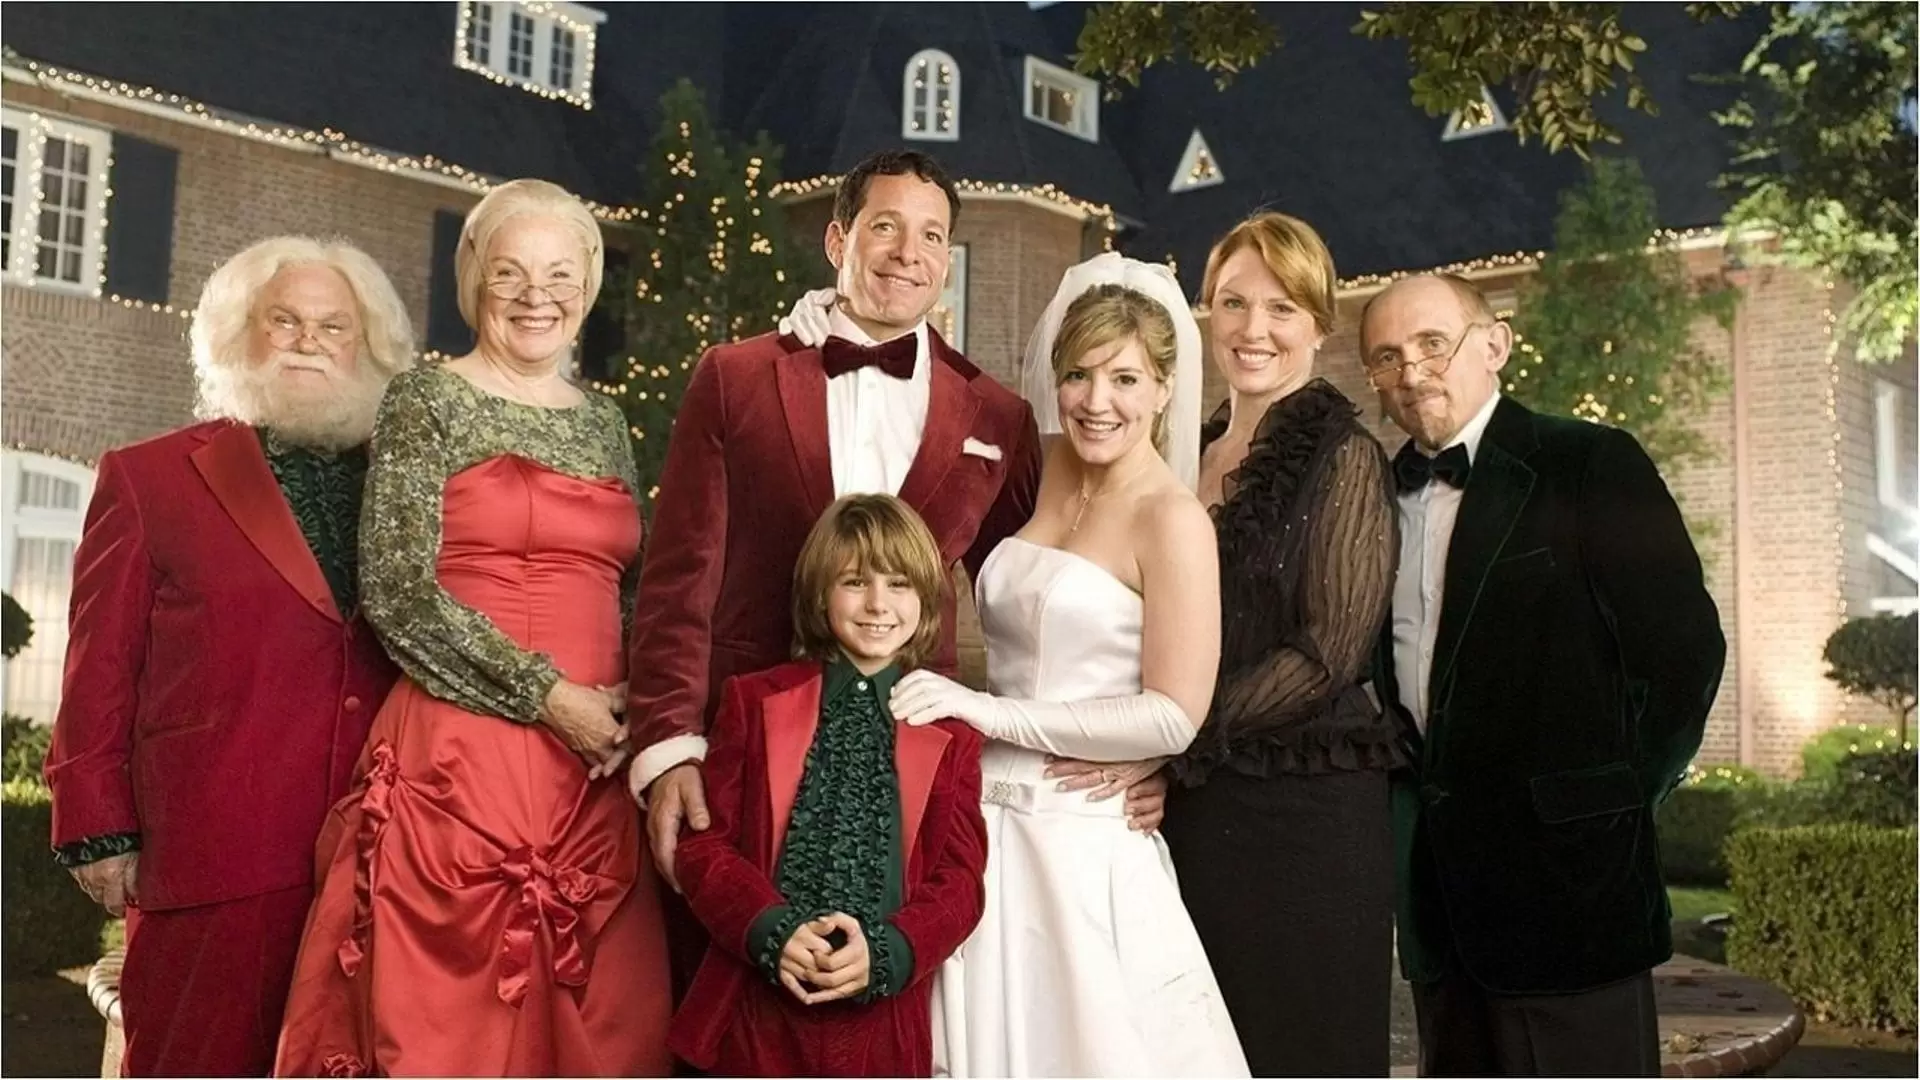 دانلود فیلم Meet the Santas 2005 (با سانتاها دیدار کنید)